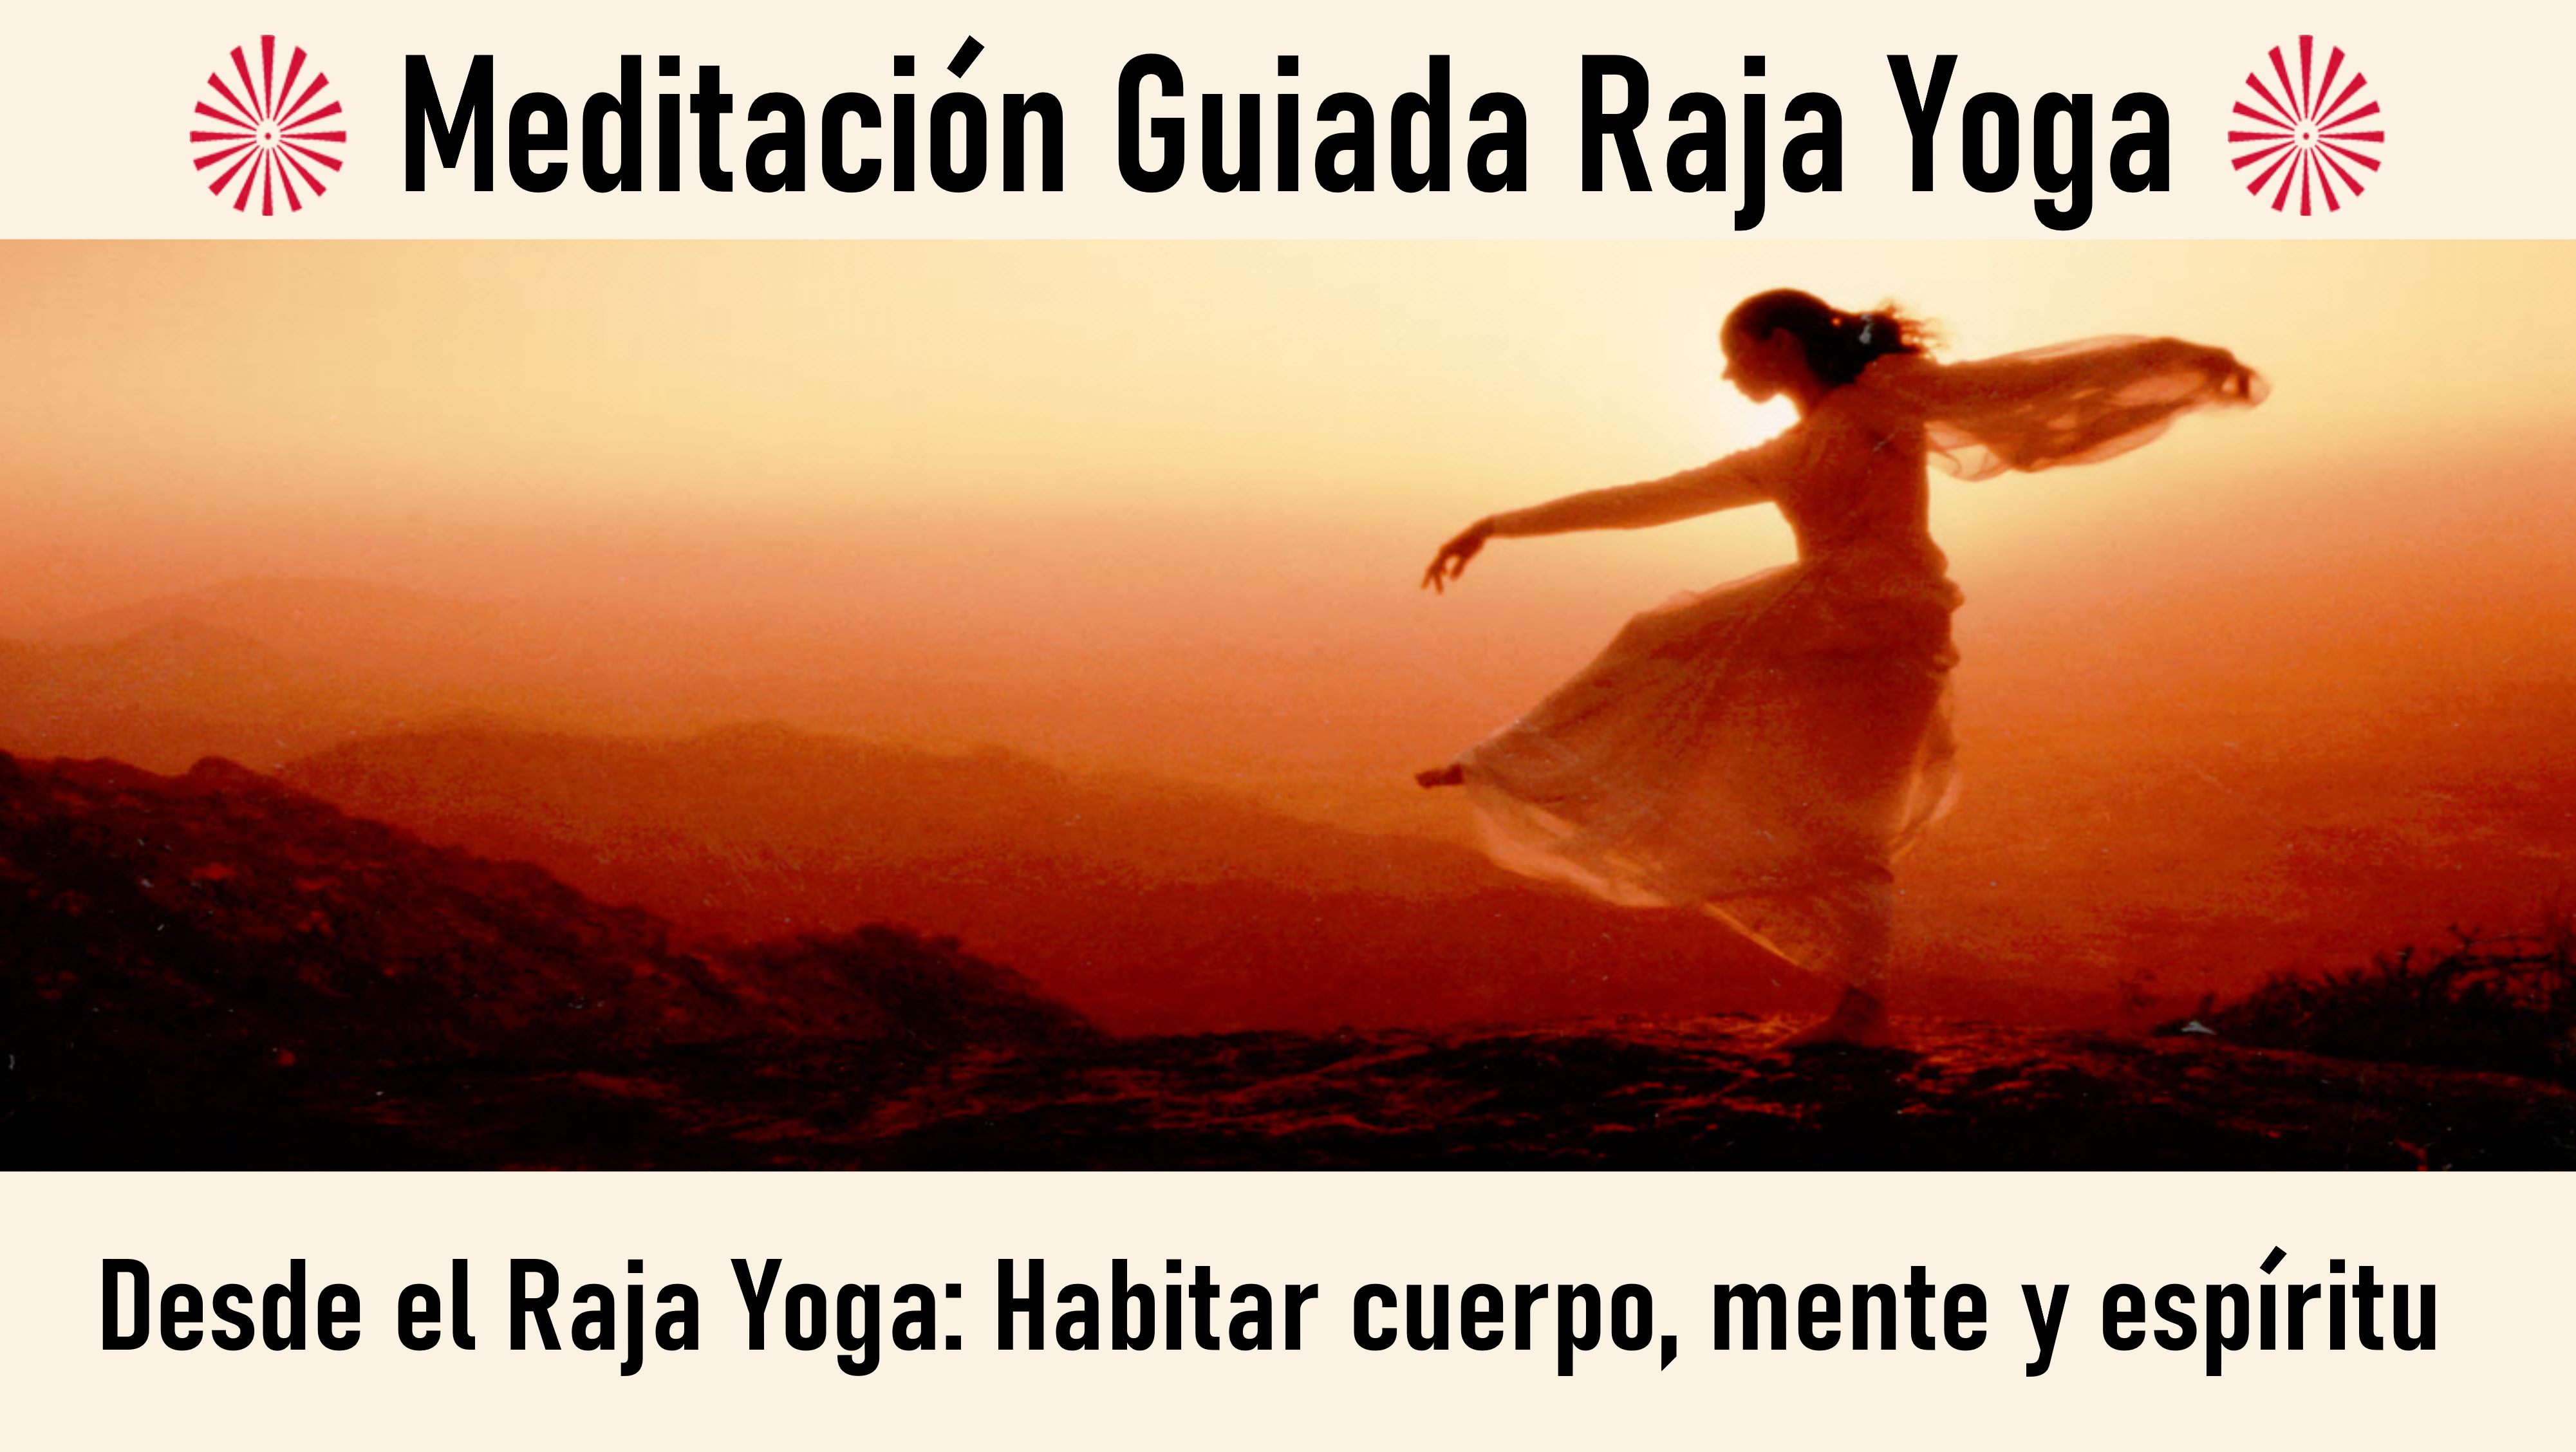 25 Septiembre 2020 Meditación guiada: Desde el Raja Yoga  Habitar cuerpo, mente y espíritu